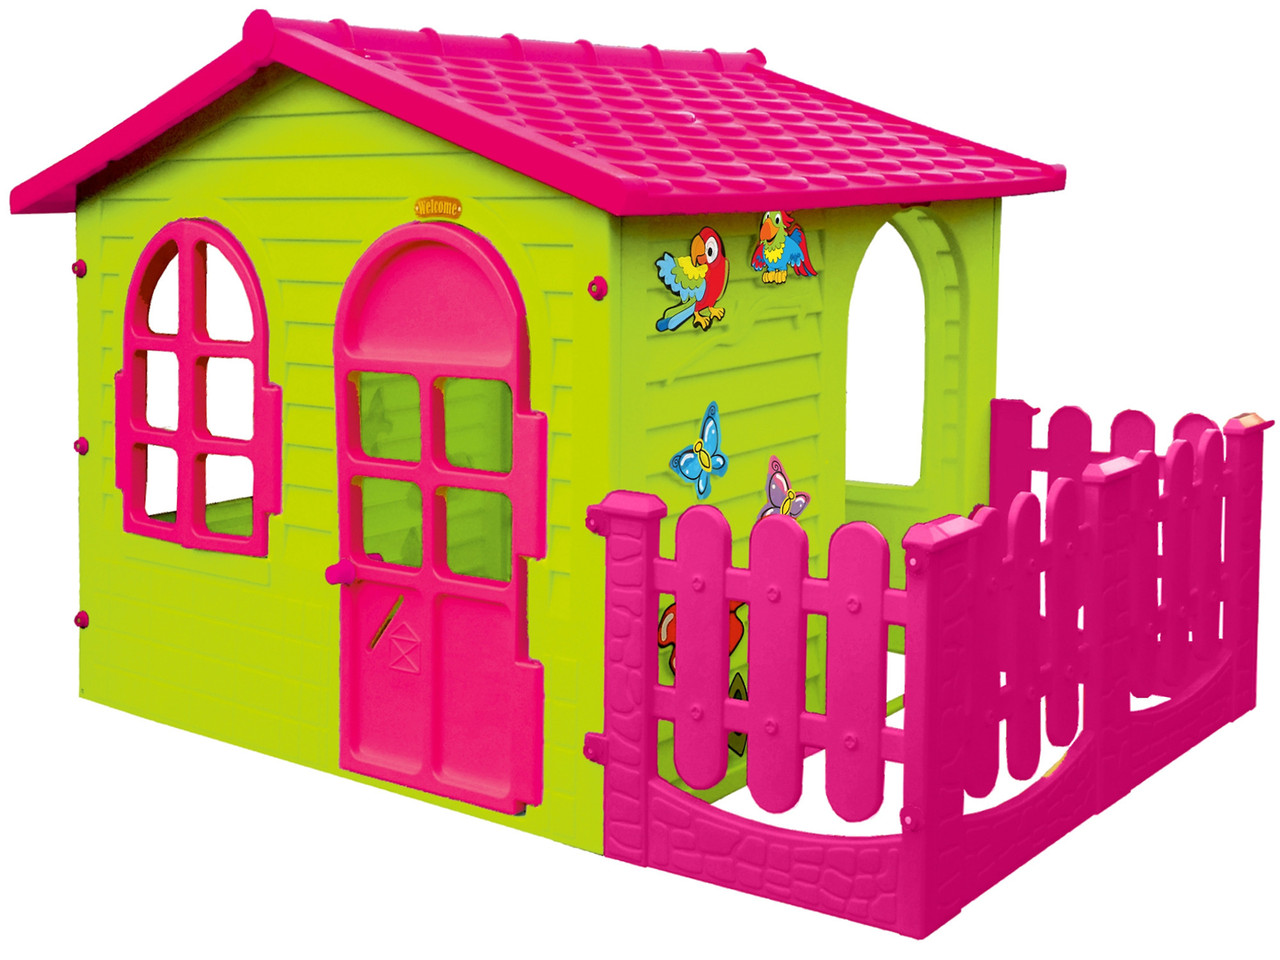 Дитячий ігровий будиночок Mochtoy рожевий дах